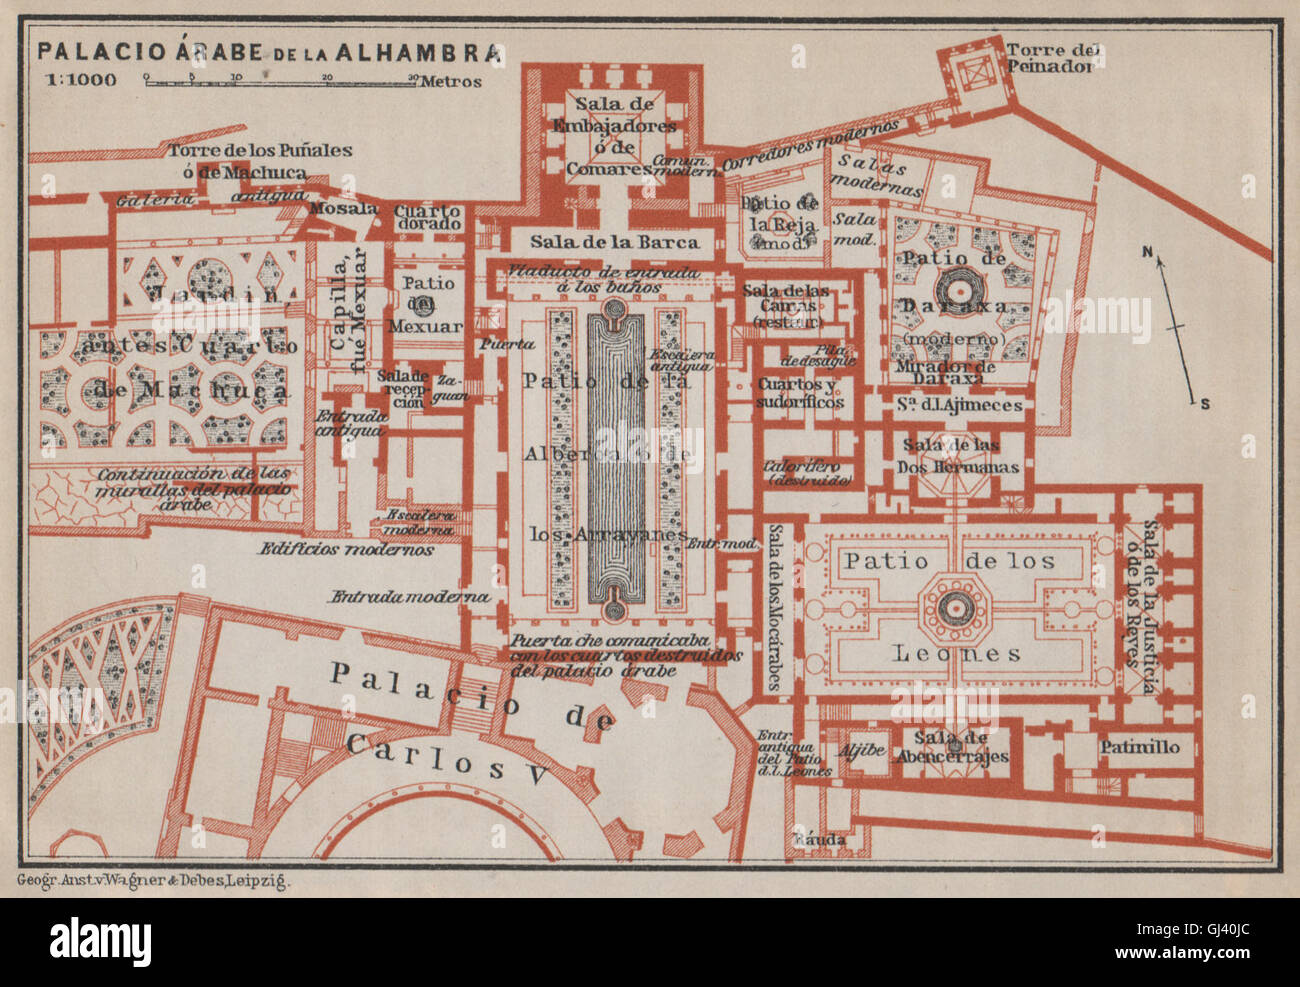 PALACIO ARABE DE LA ALHAMBRA floor plan. Granada. Spain España mapa, 1913 Stock Photo